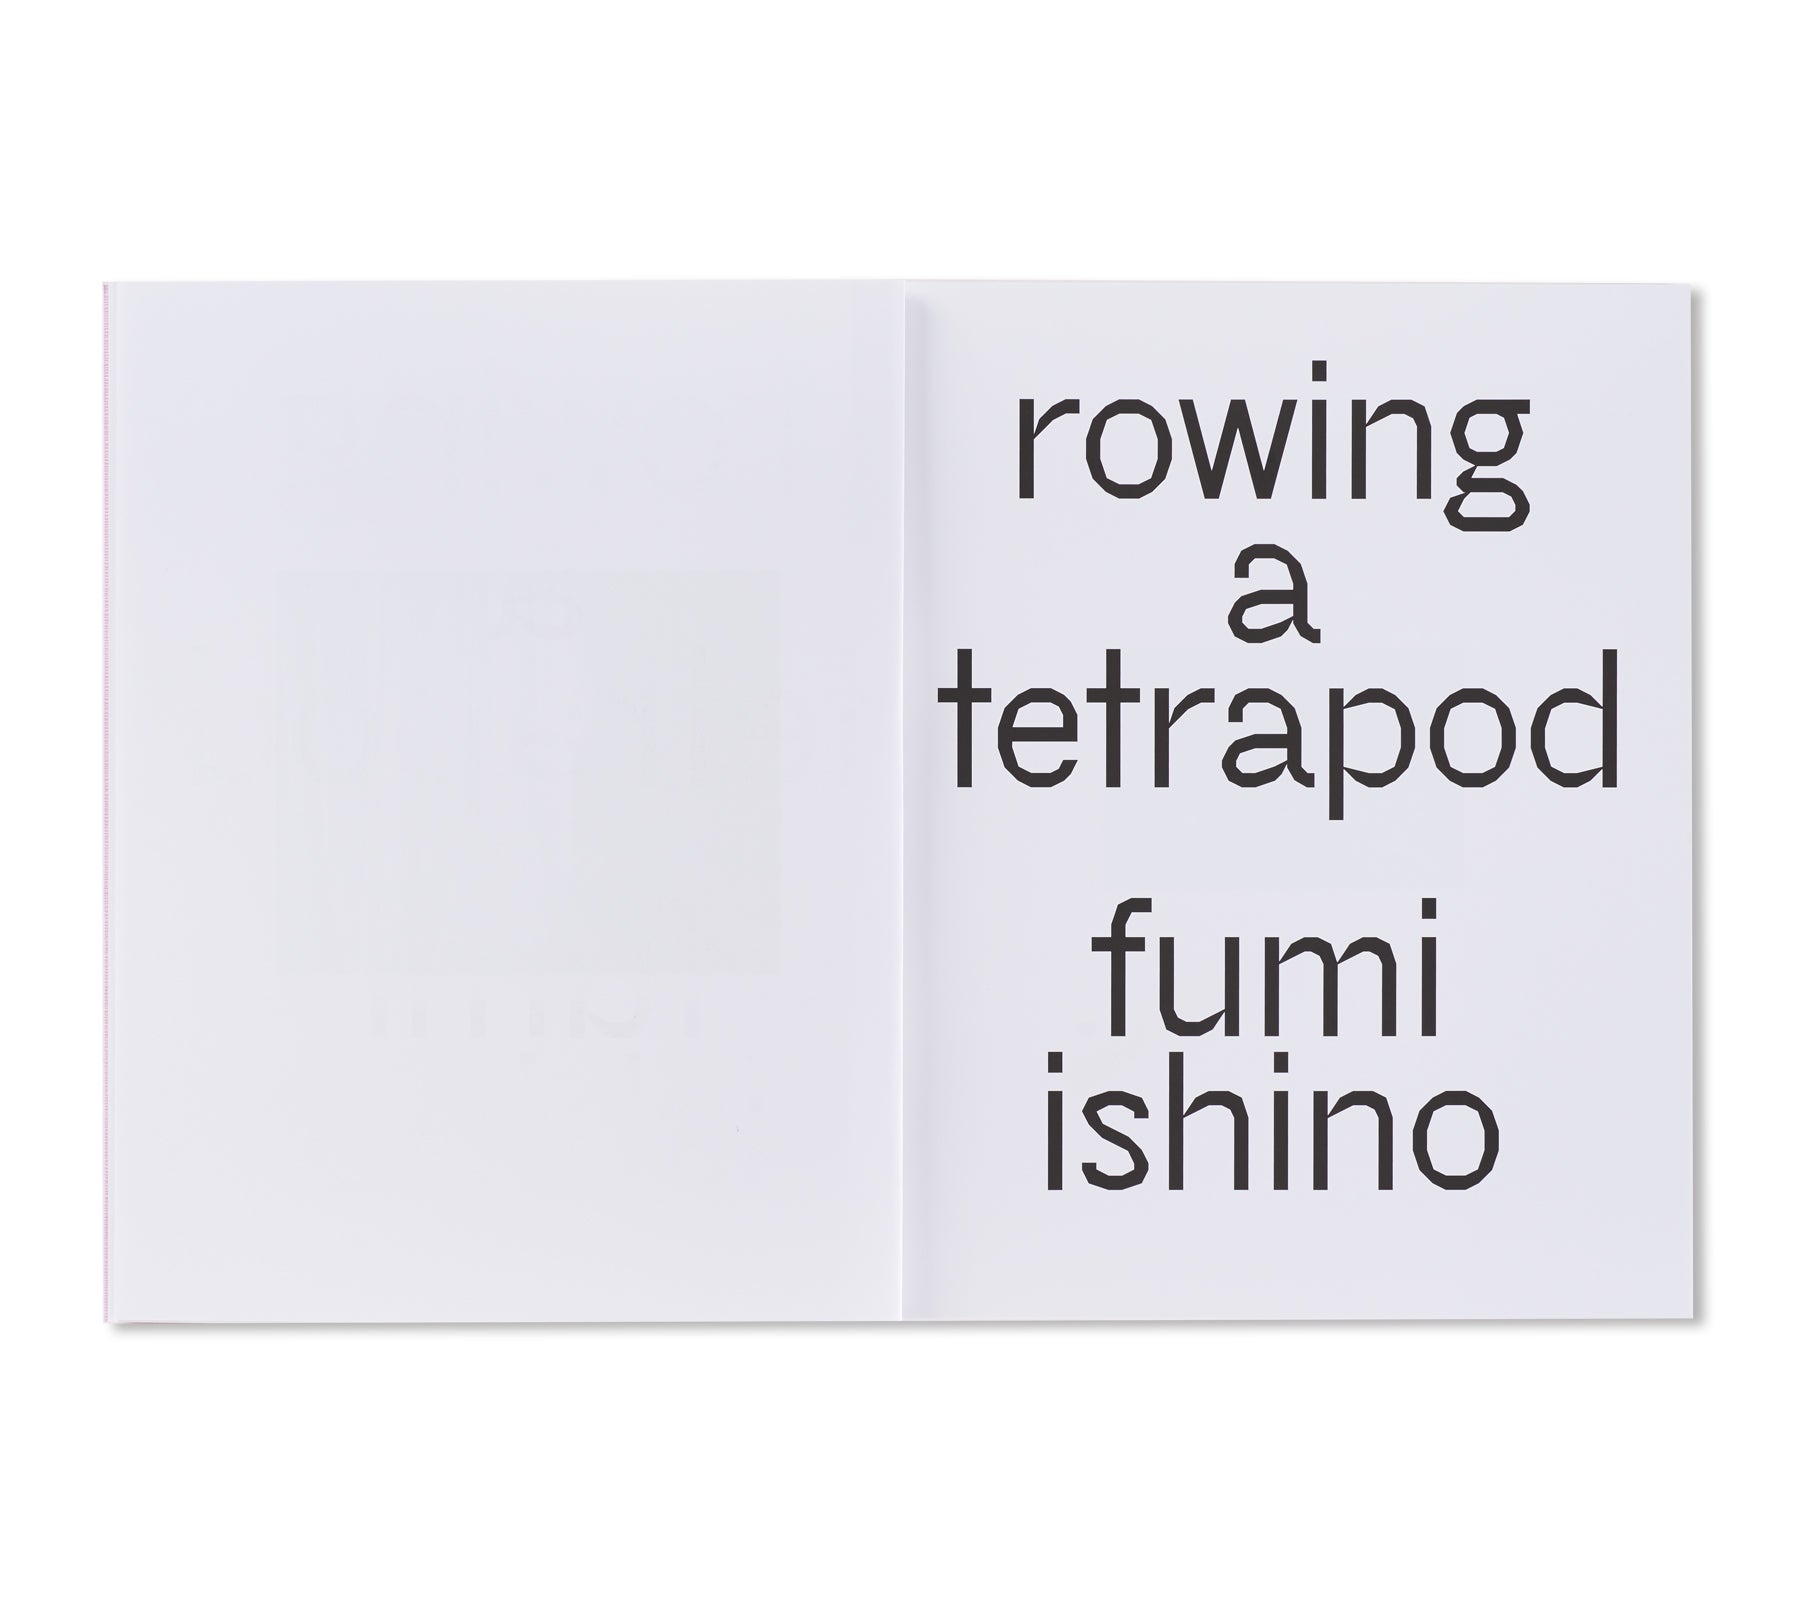 ROWING A TETRAPOD by Fumi Ishino